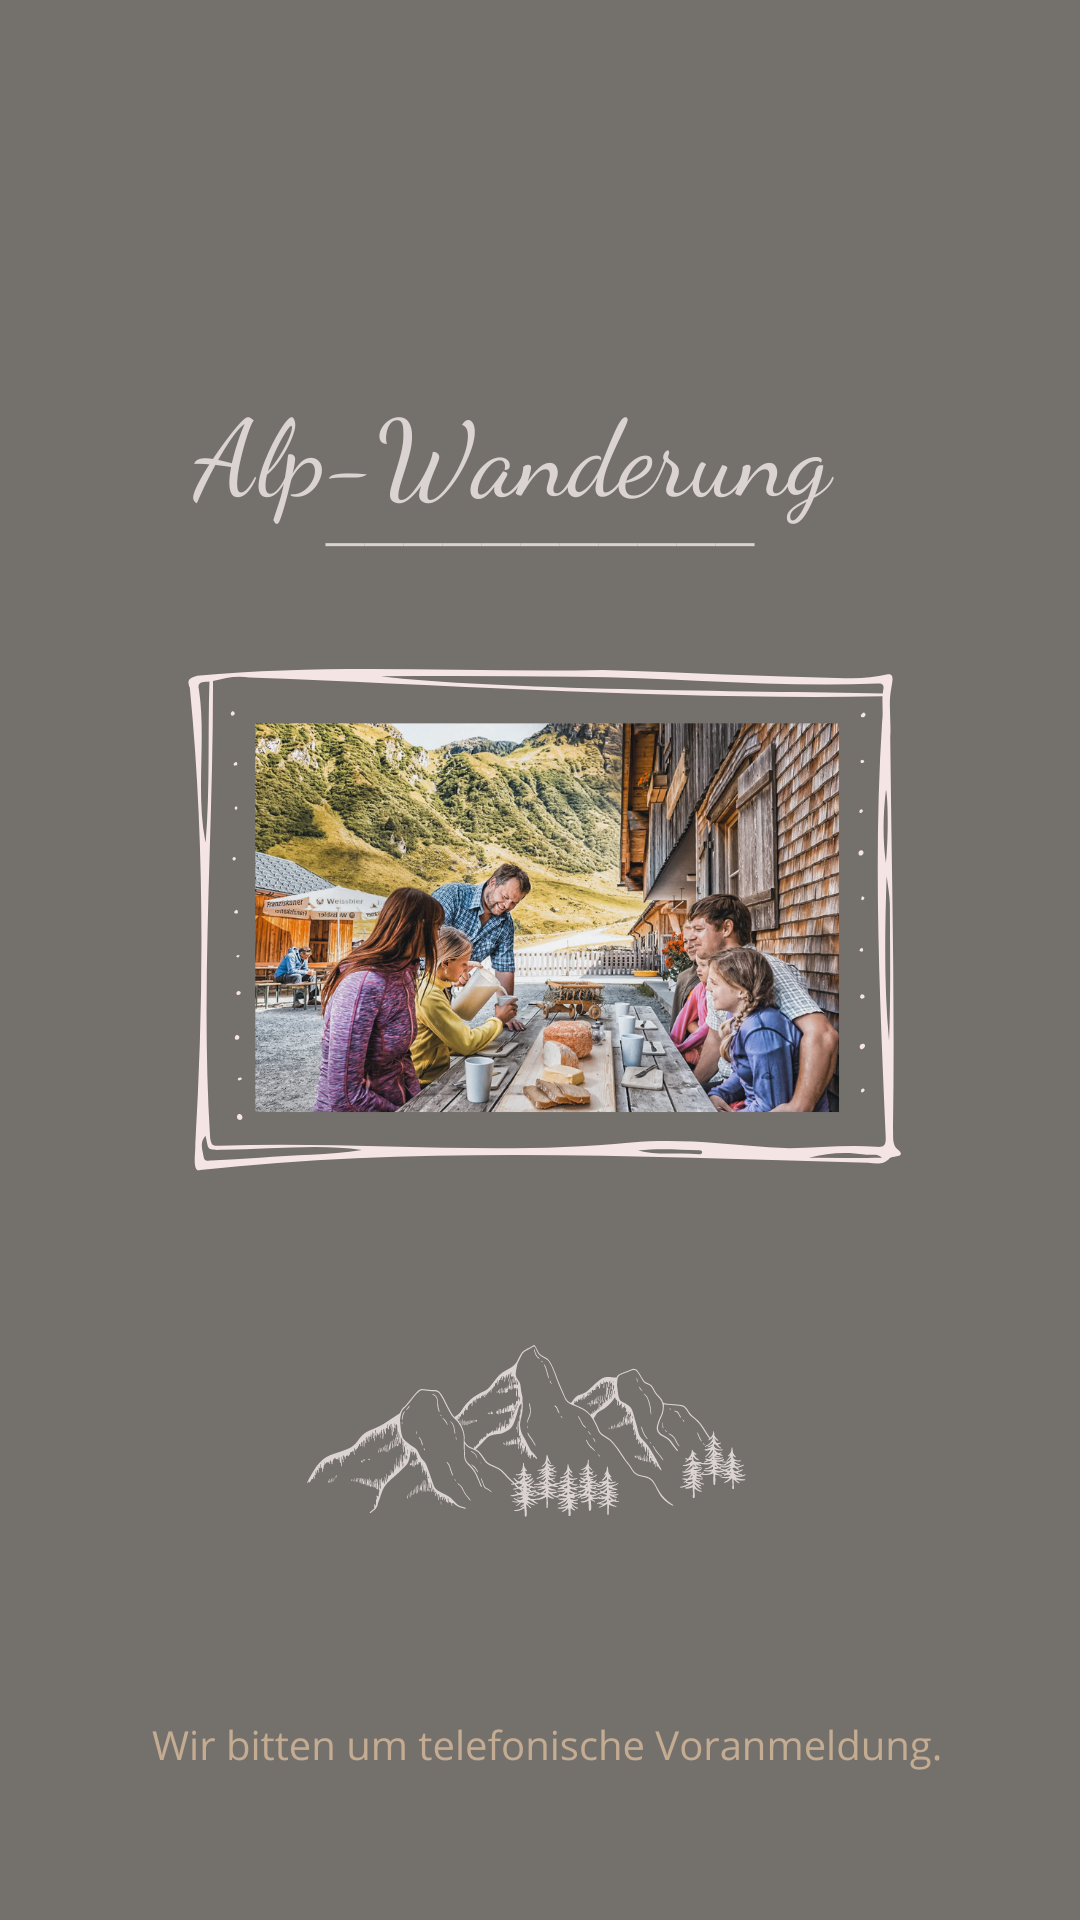 Alp-Wanderung